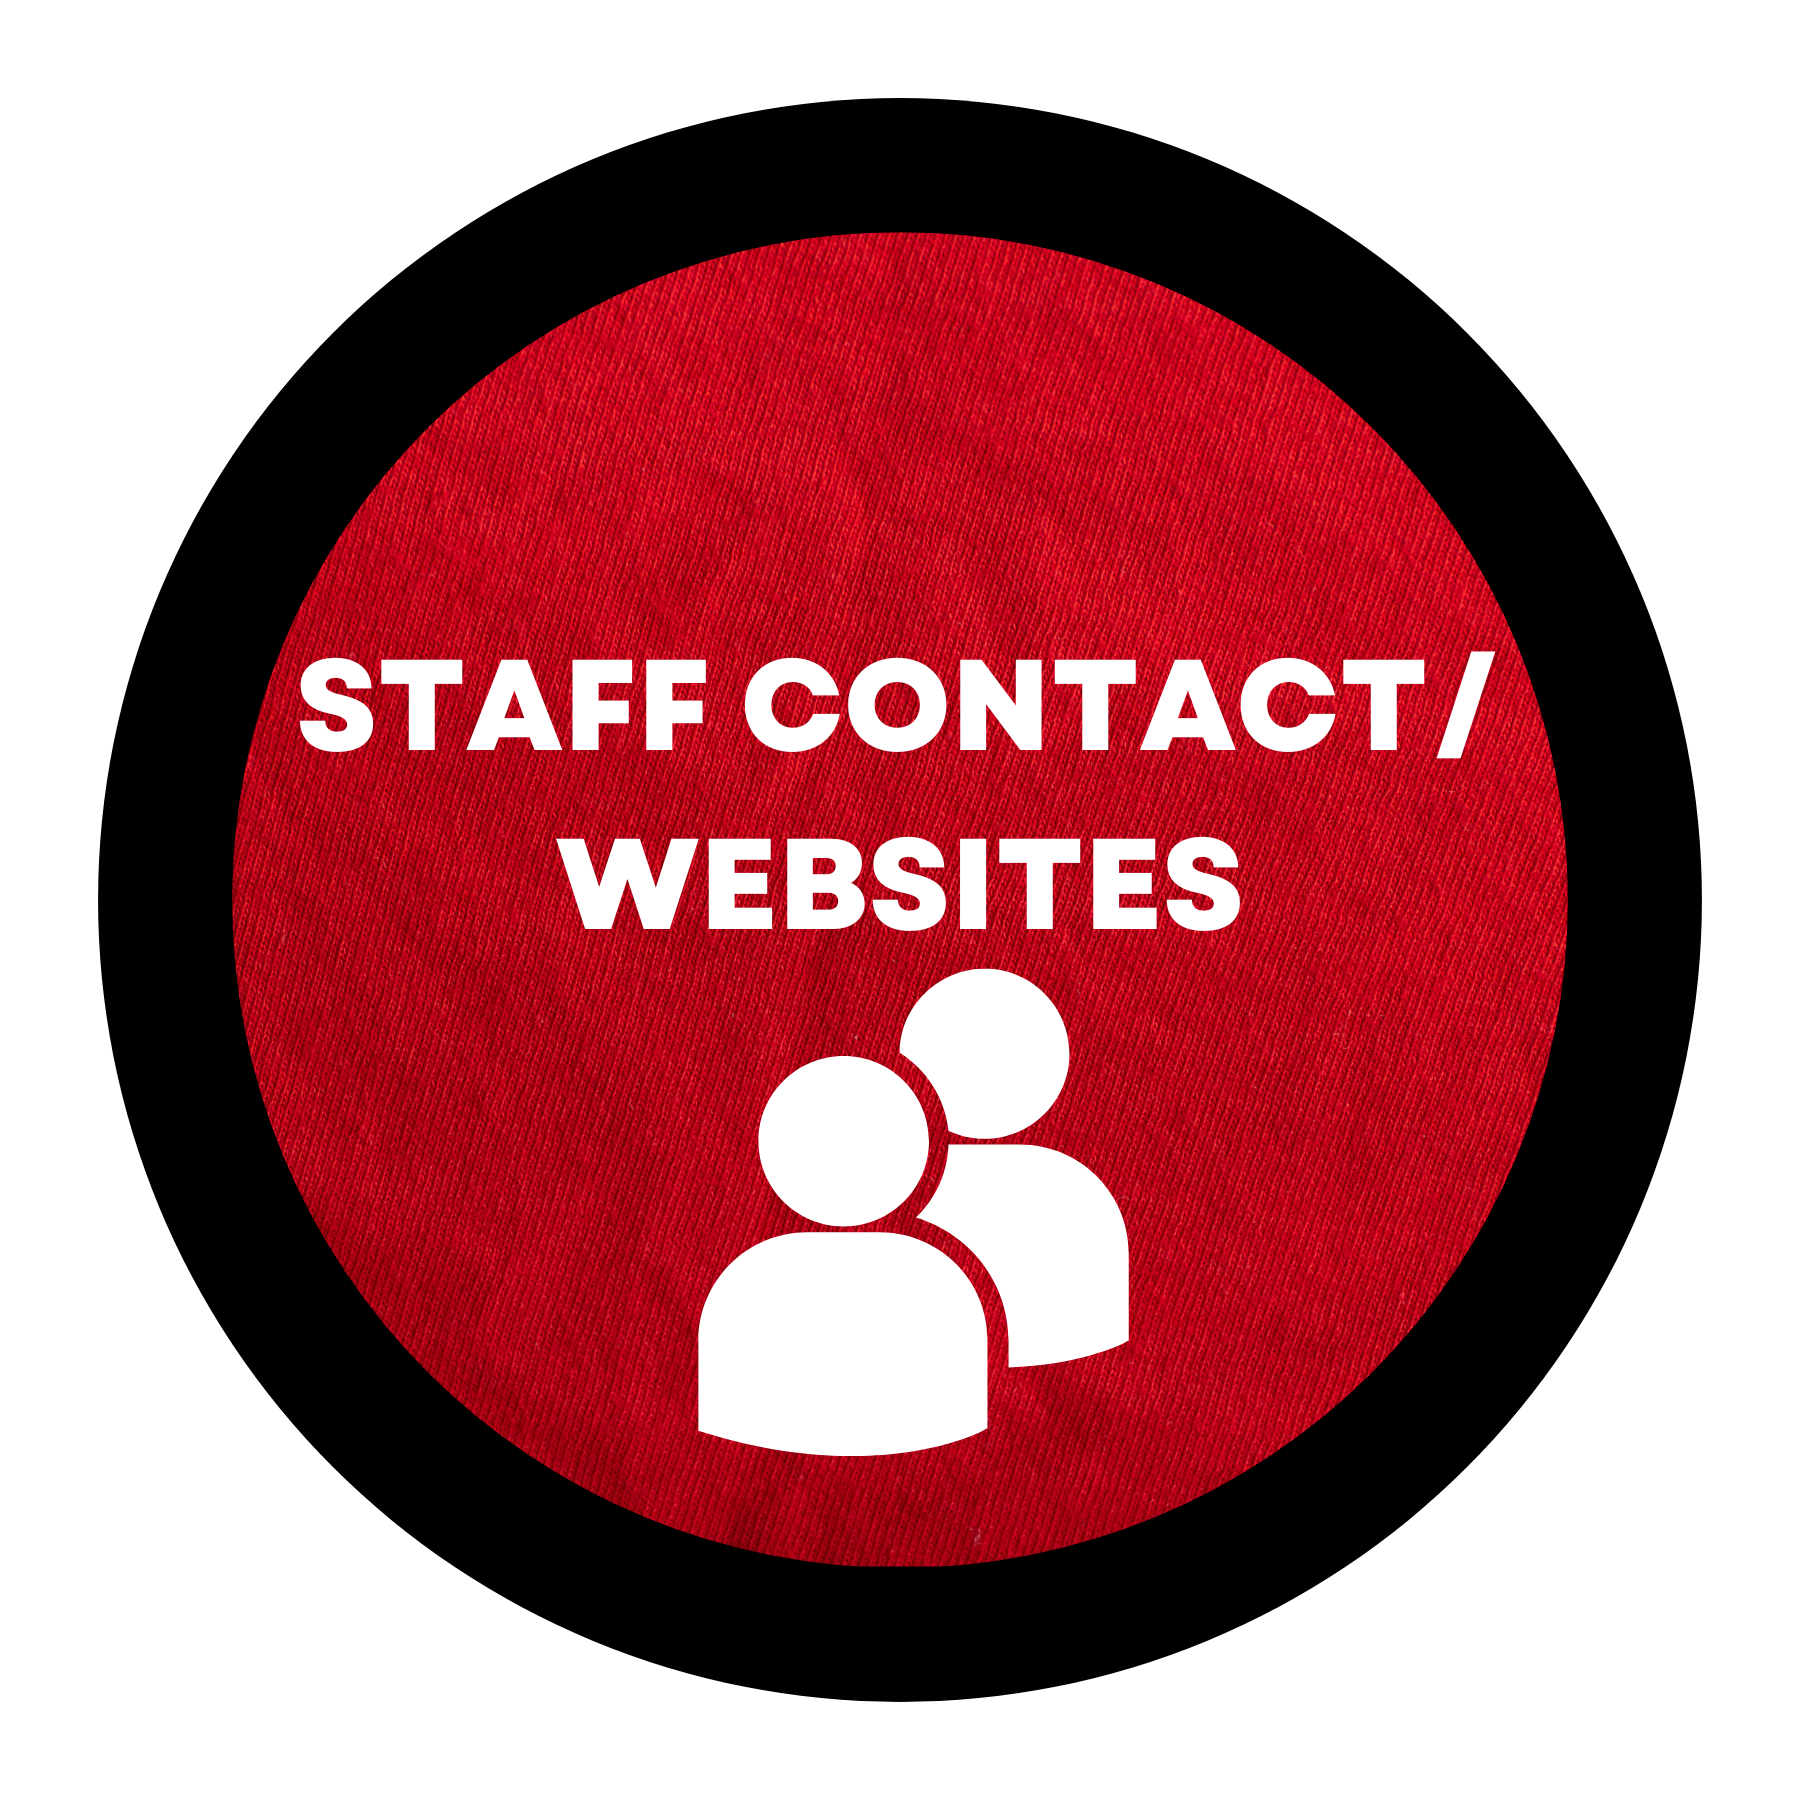 Staff Contact/Websites